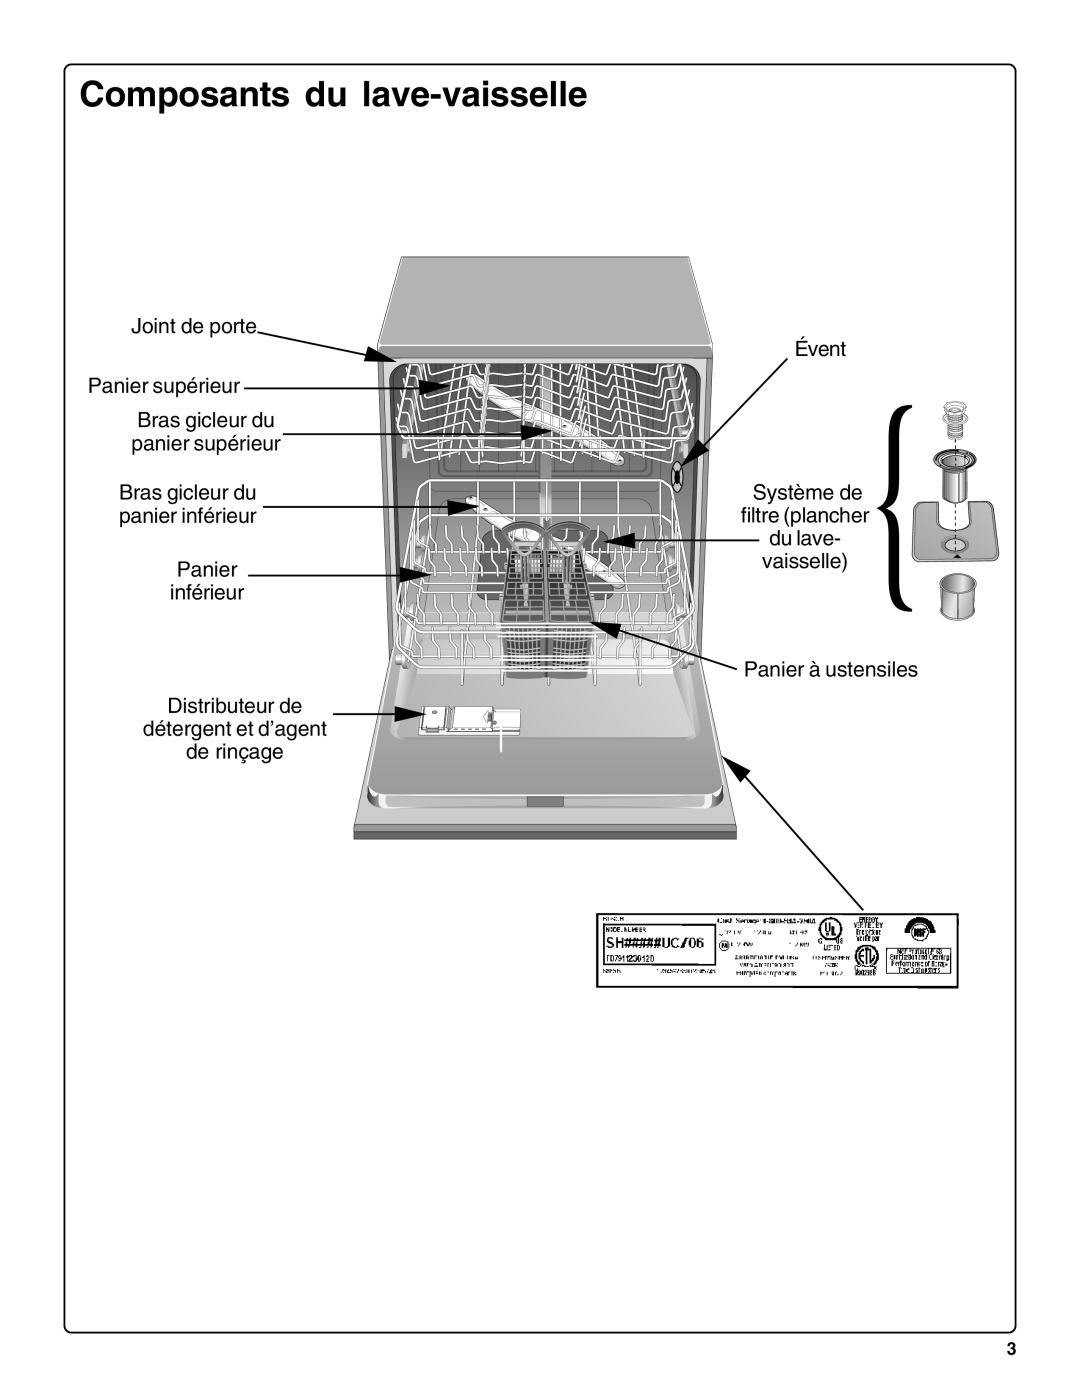 Bosch Appliances SHE66C Composants du lave-vaisselle, Joint de porte Panier supérieur, Bras gicleur du panier supérieur 